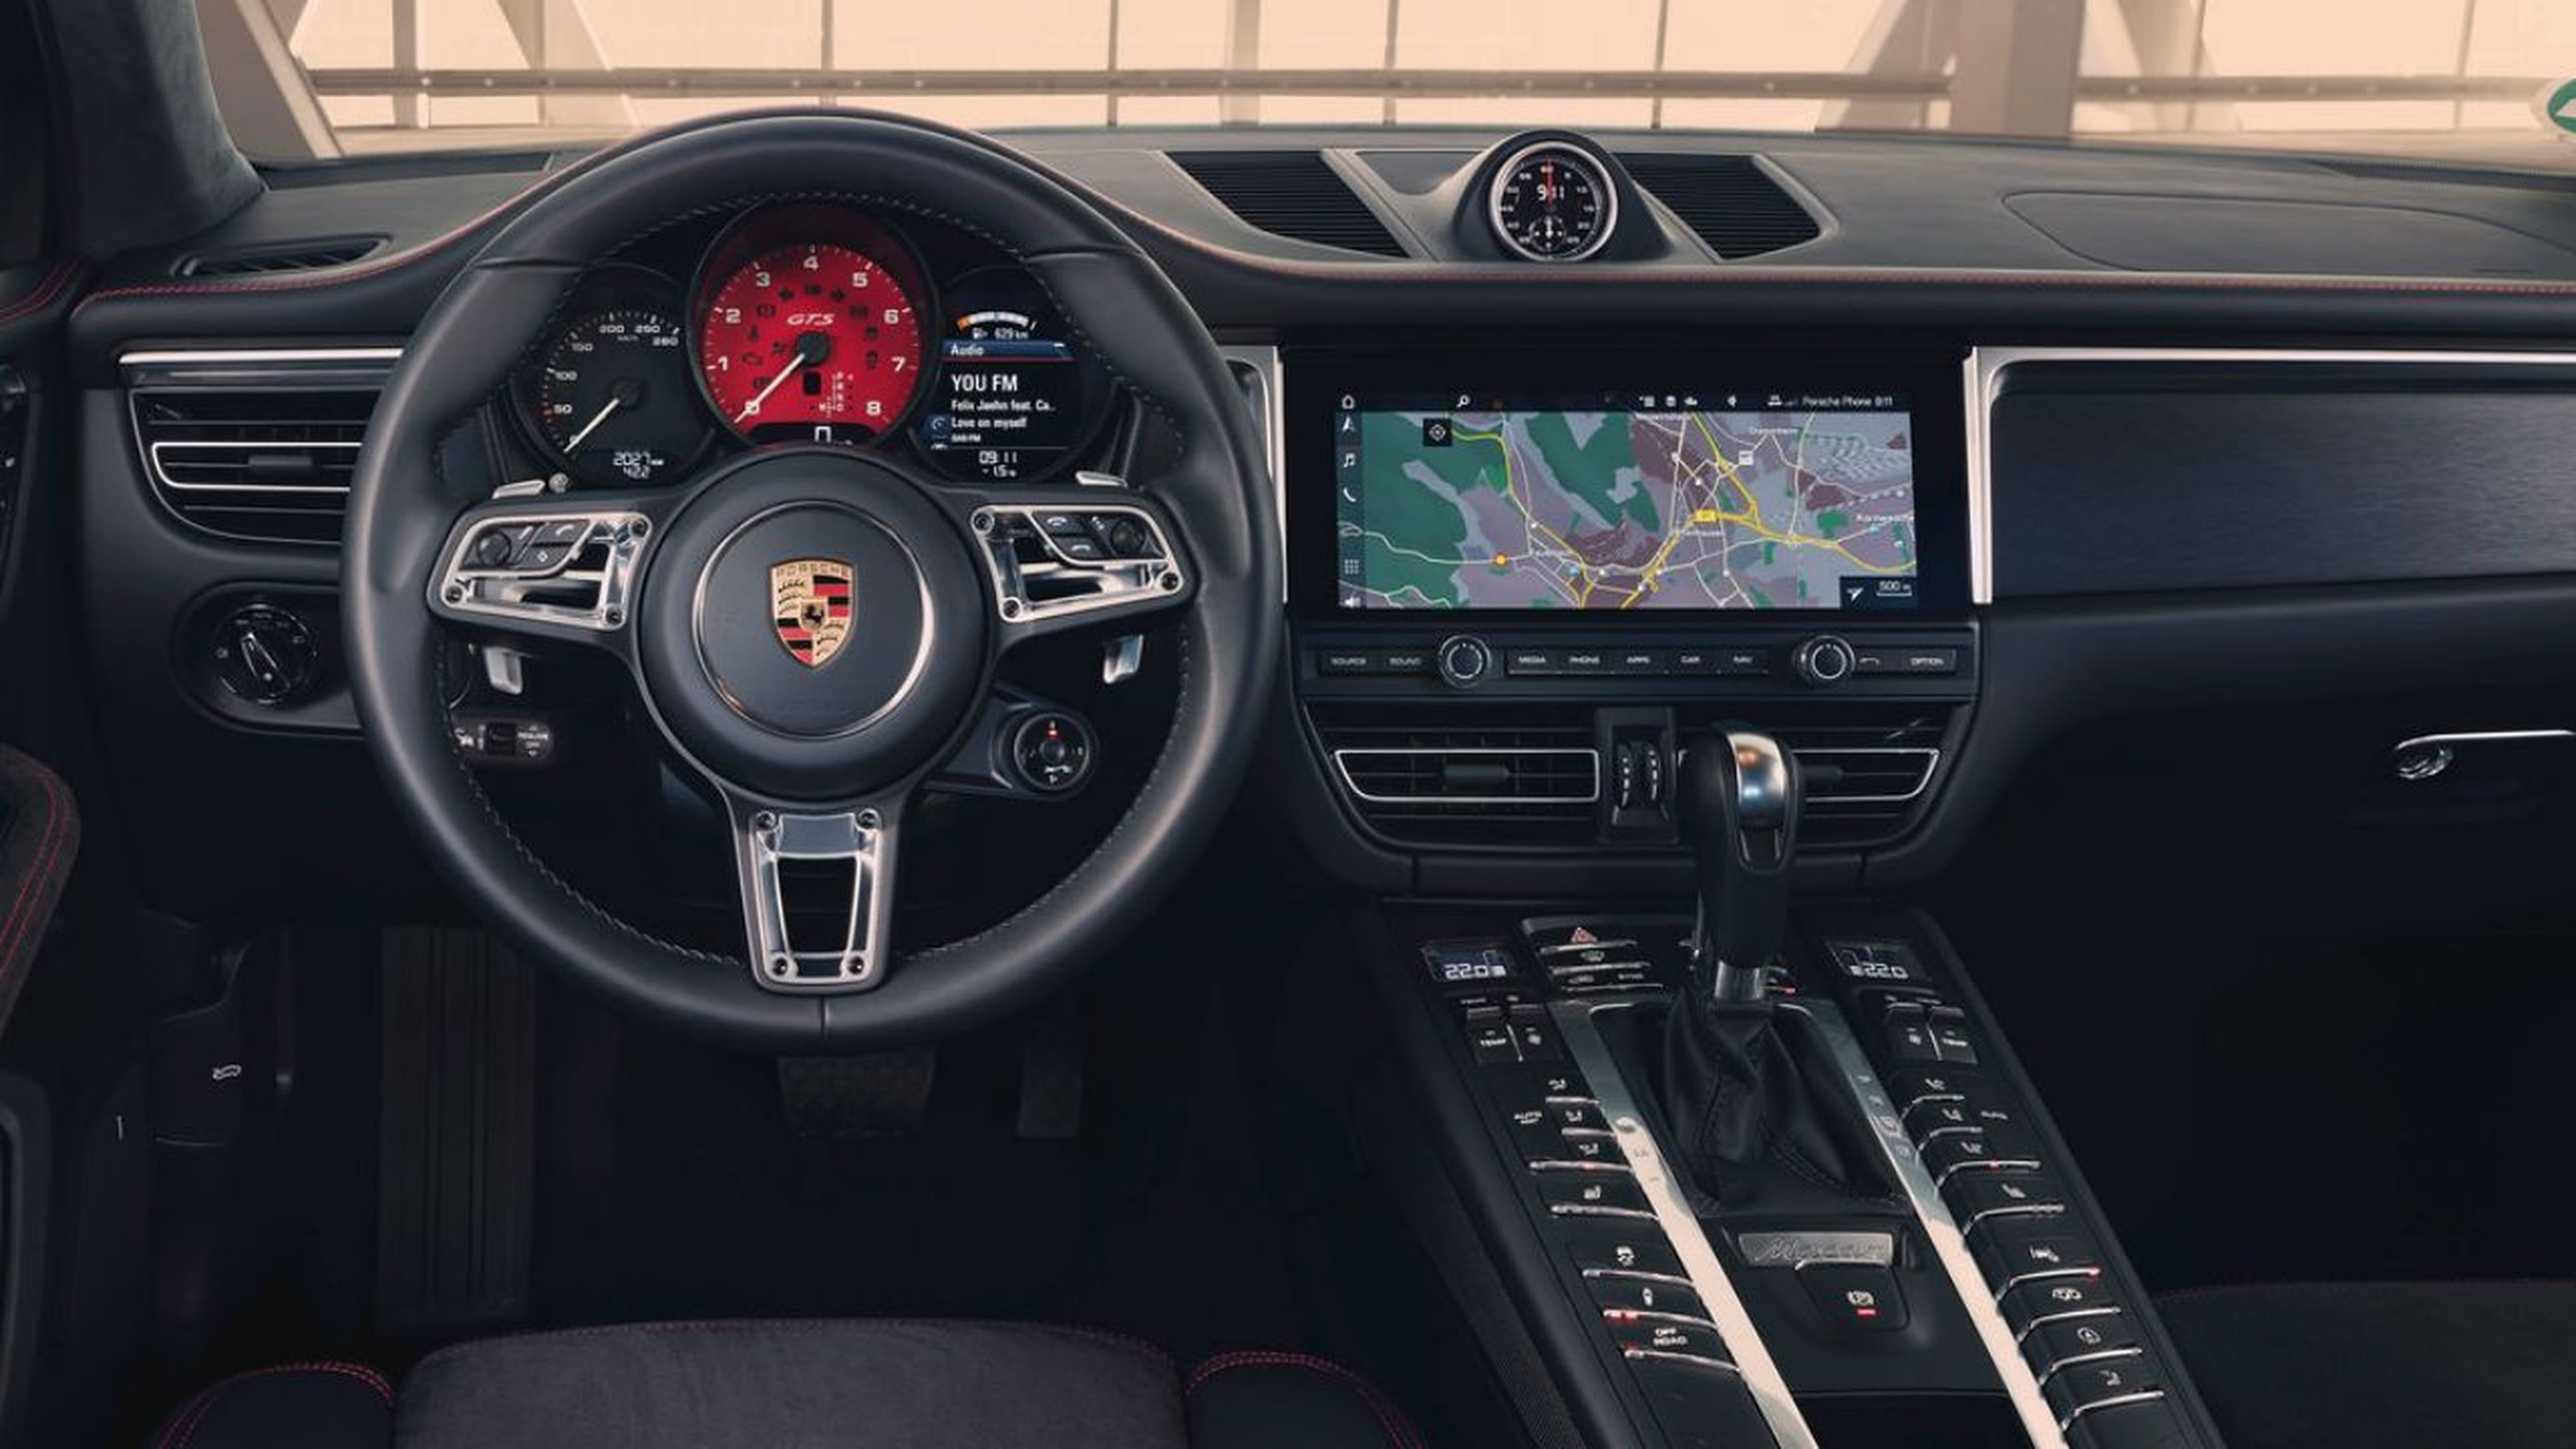 Los detalles en color rojo son una constante en el interior del nuevo Porsche Macan GTS 2020.